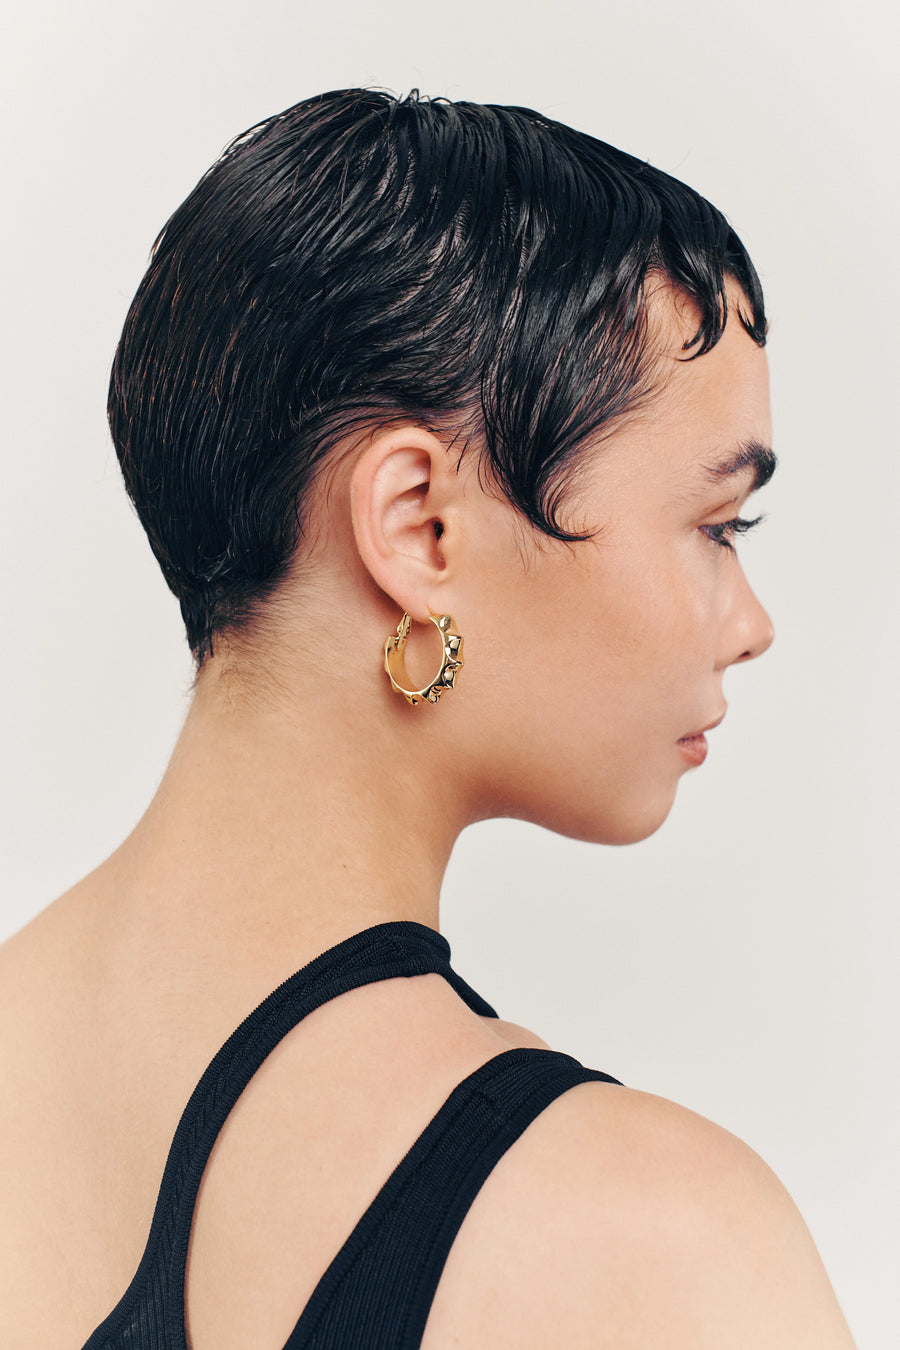 GALAXY Hoops. Radial-shaped hoop earrings, 18K gold vermeil, handmade, hypoallergenic, water-resistant